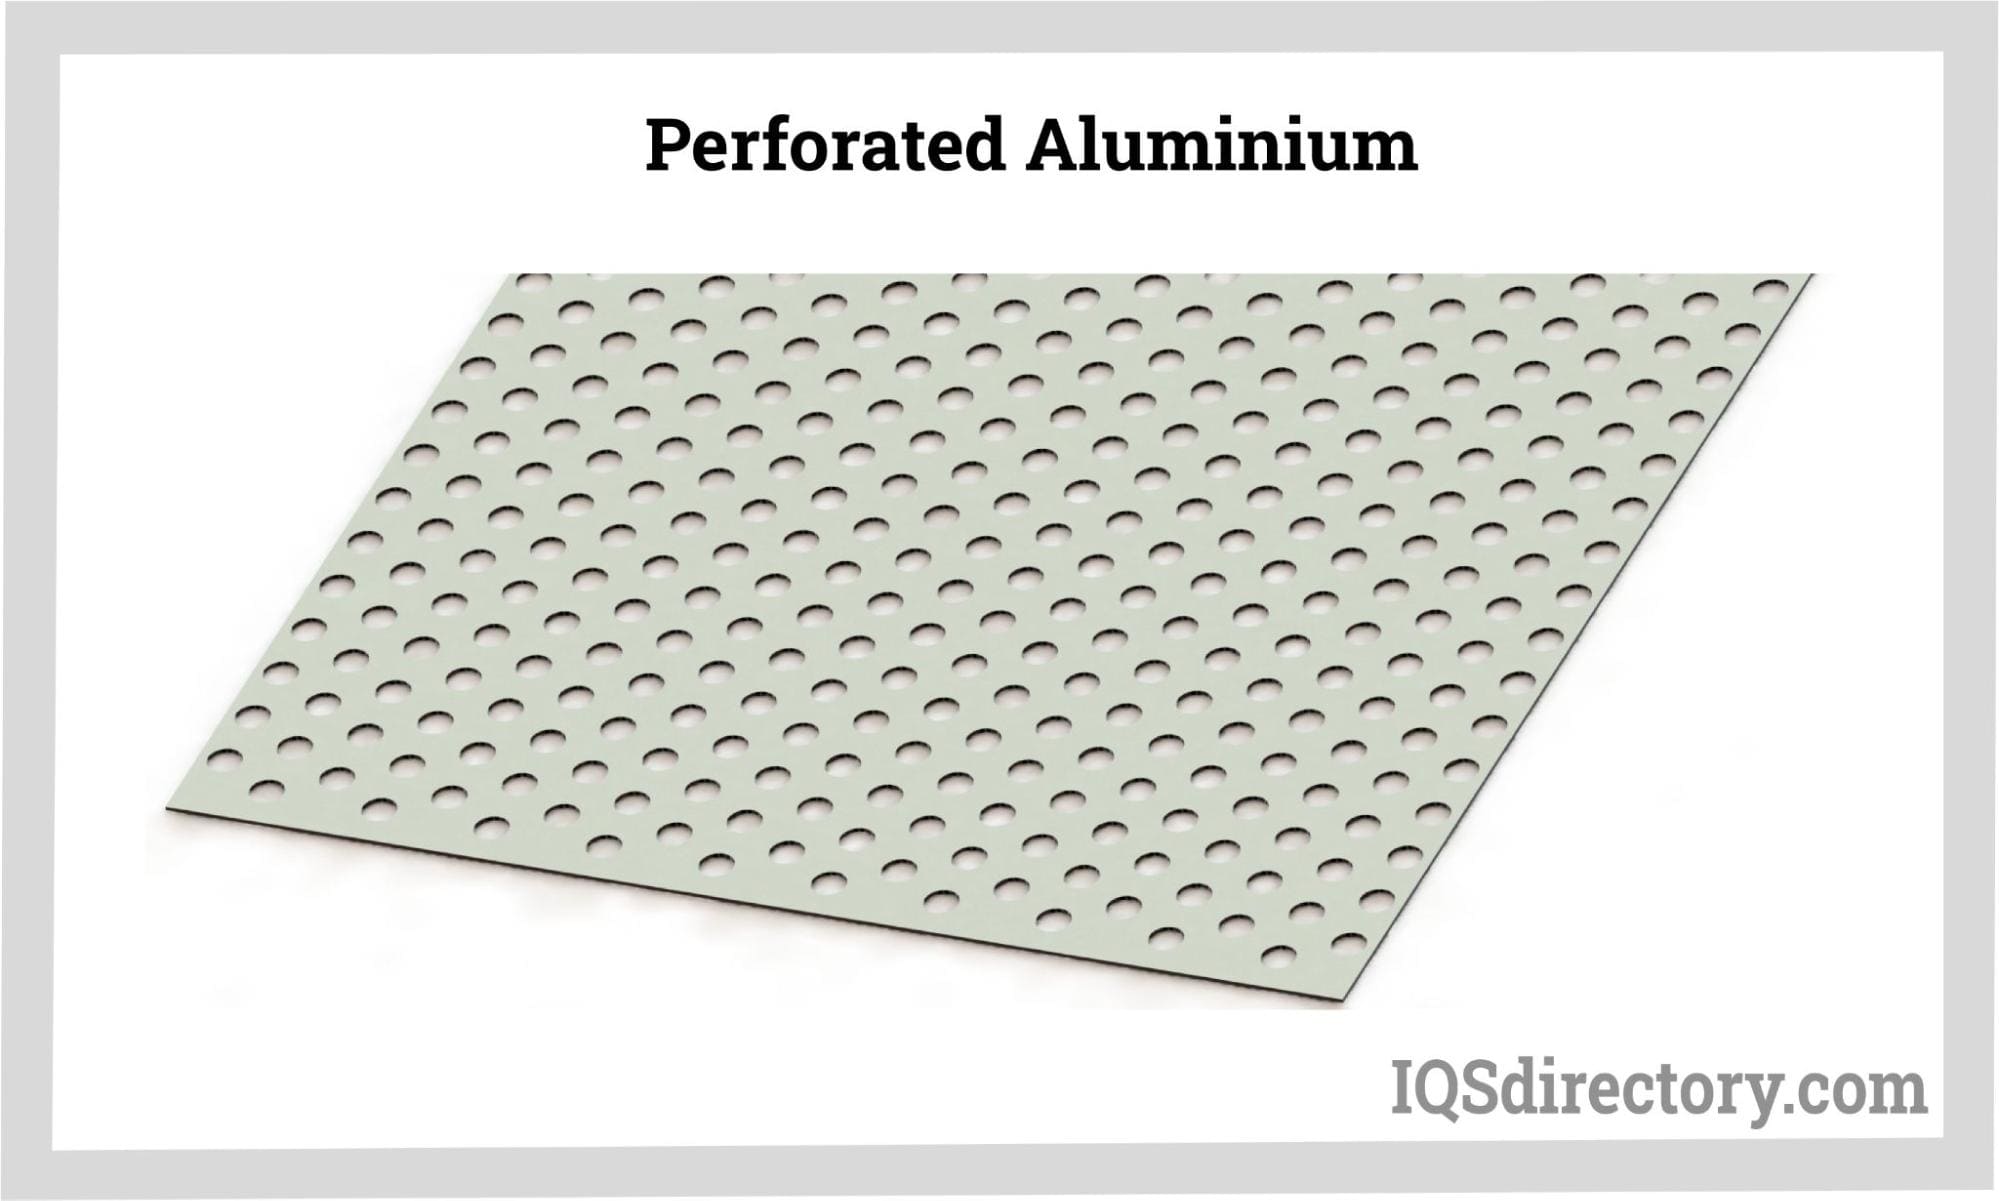 Perforated Aluminium